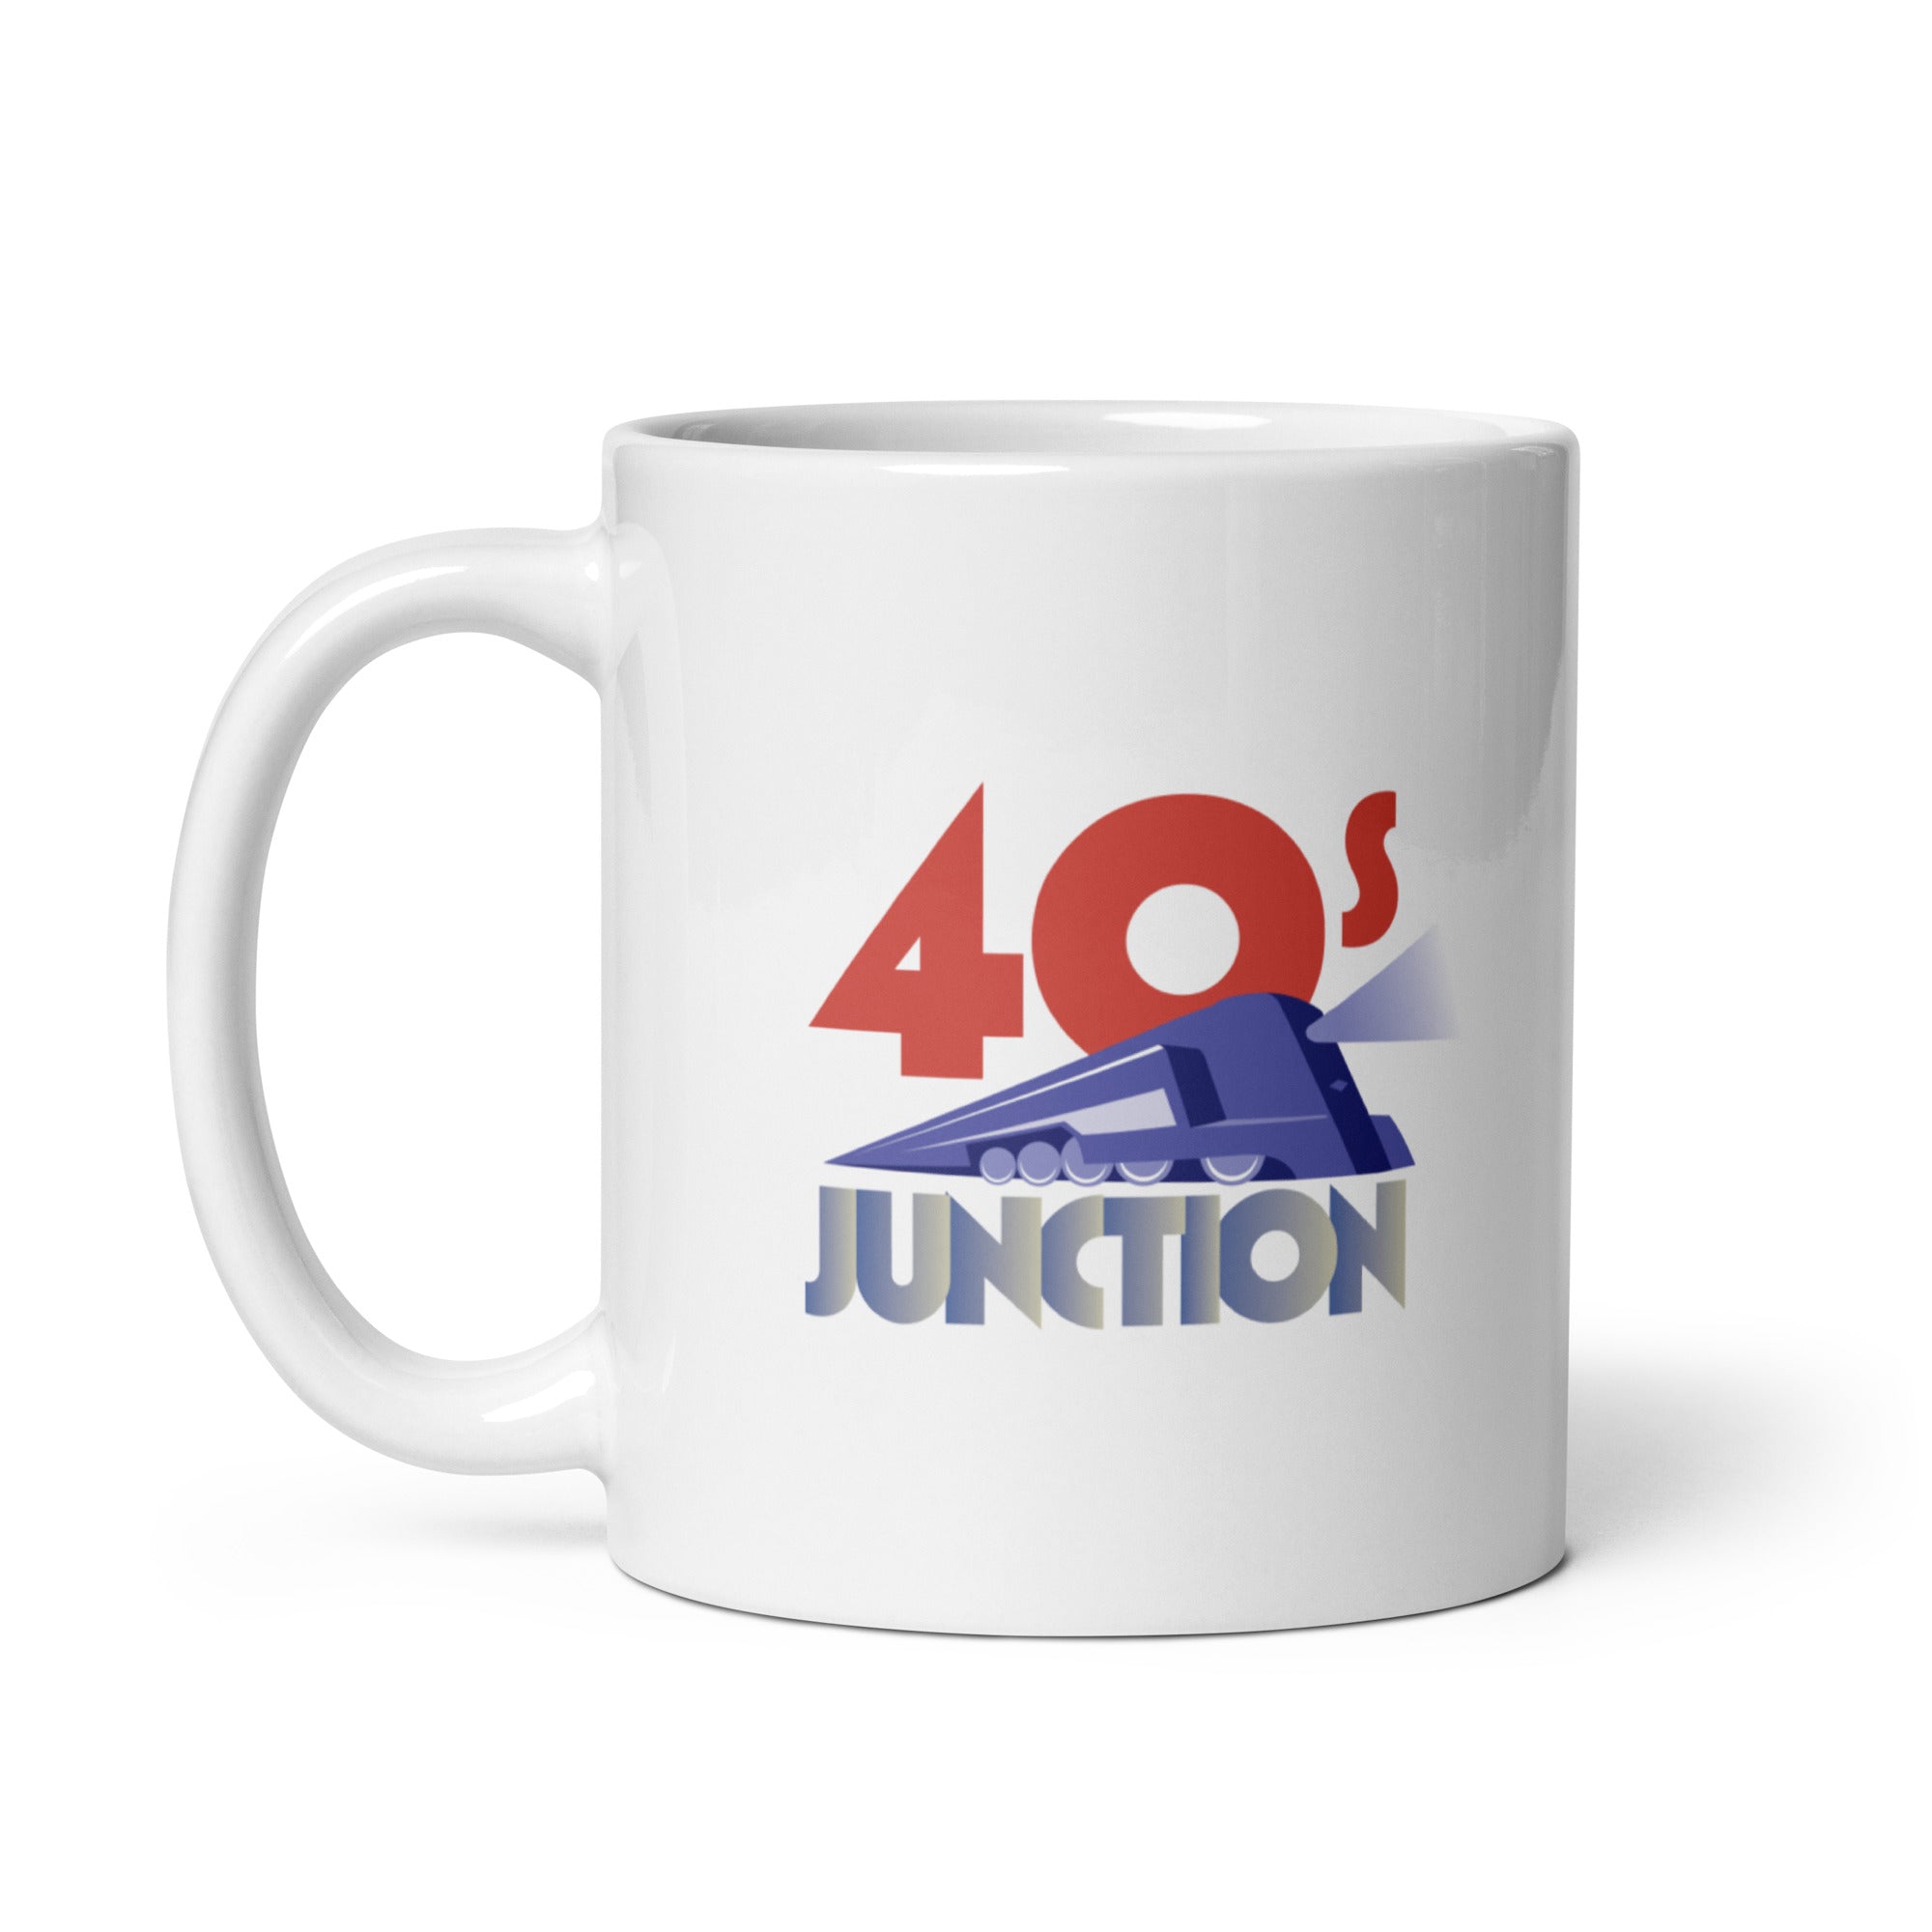 40s Junction: Mug